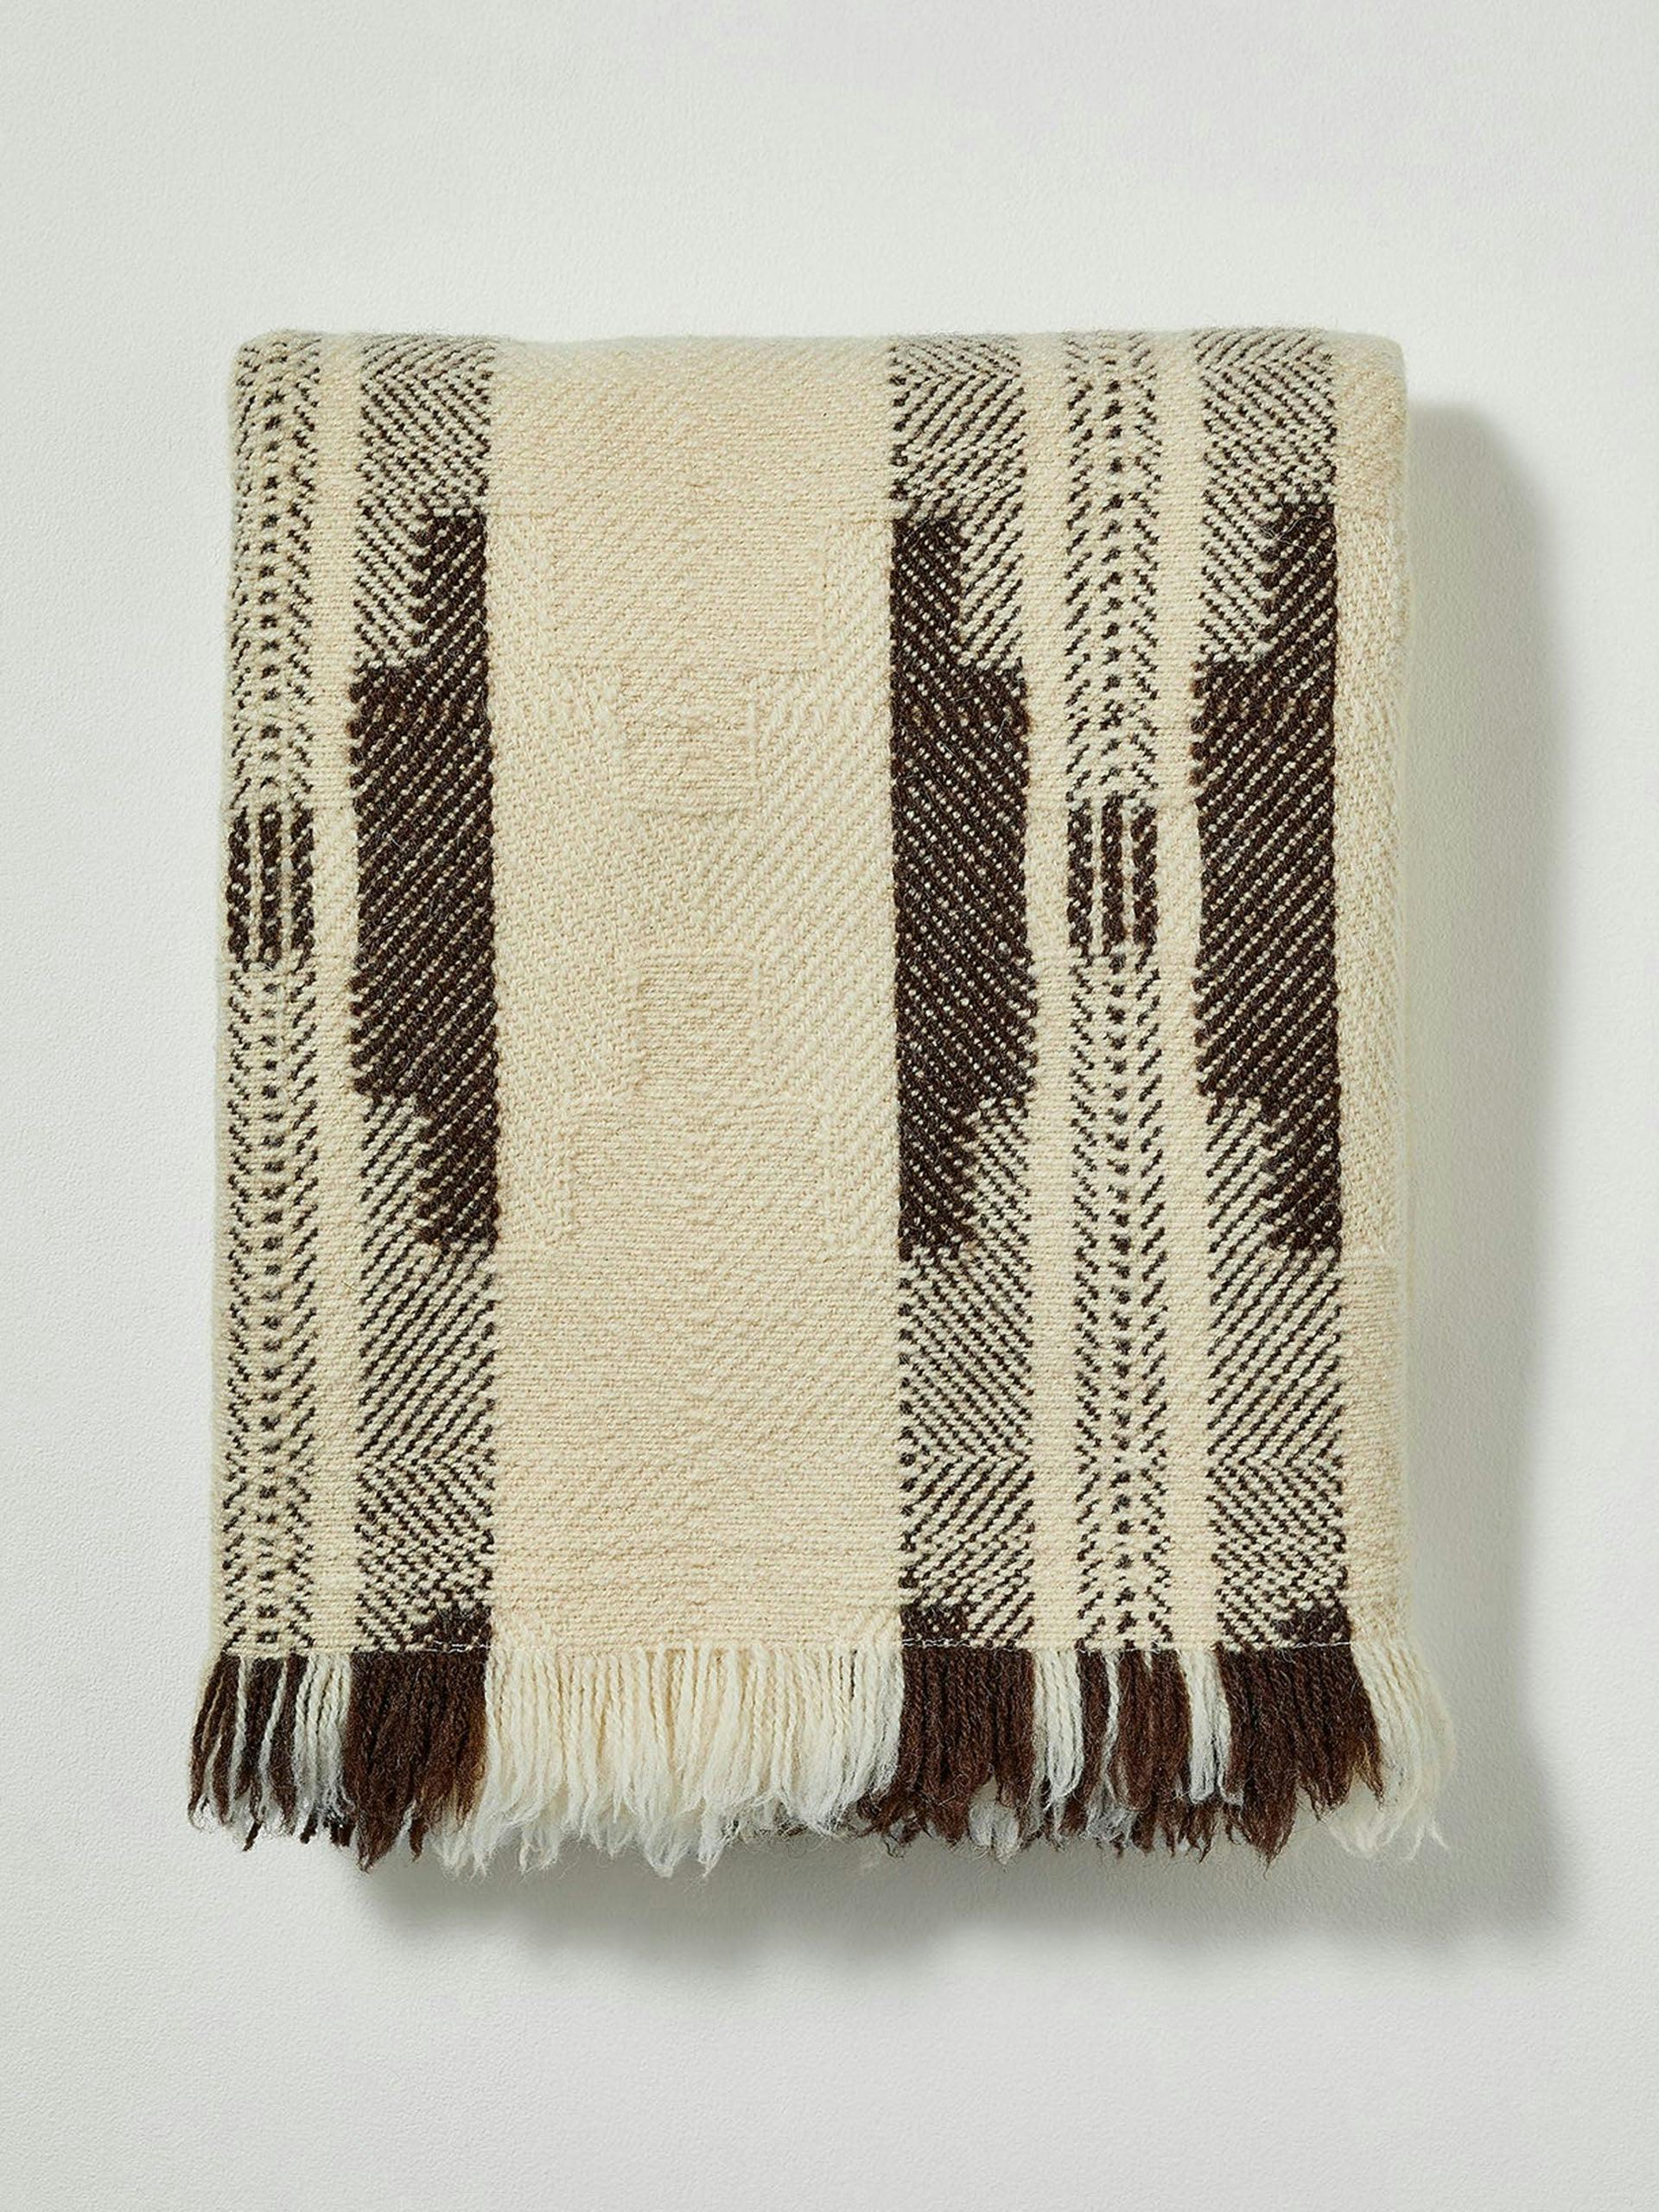 Bulgarian wool blanket